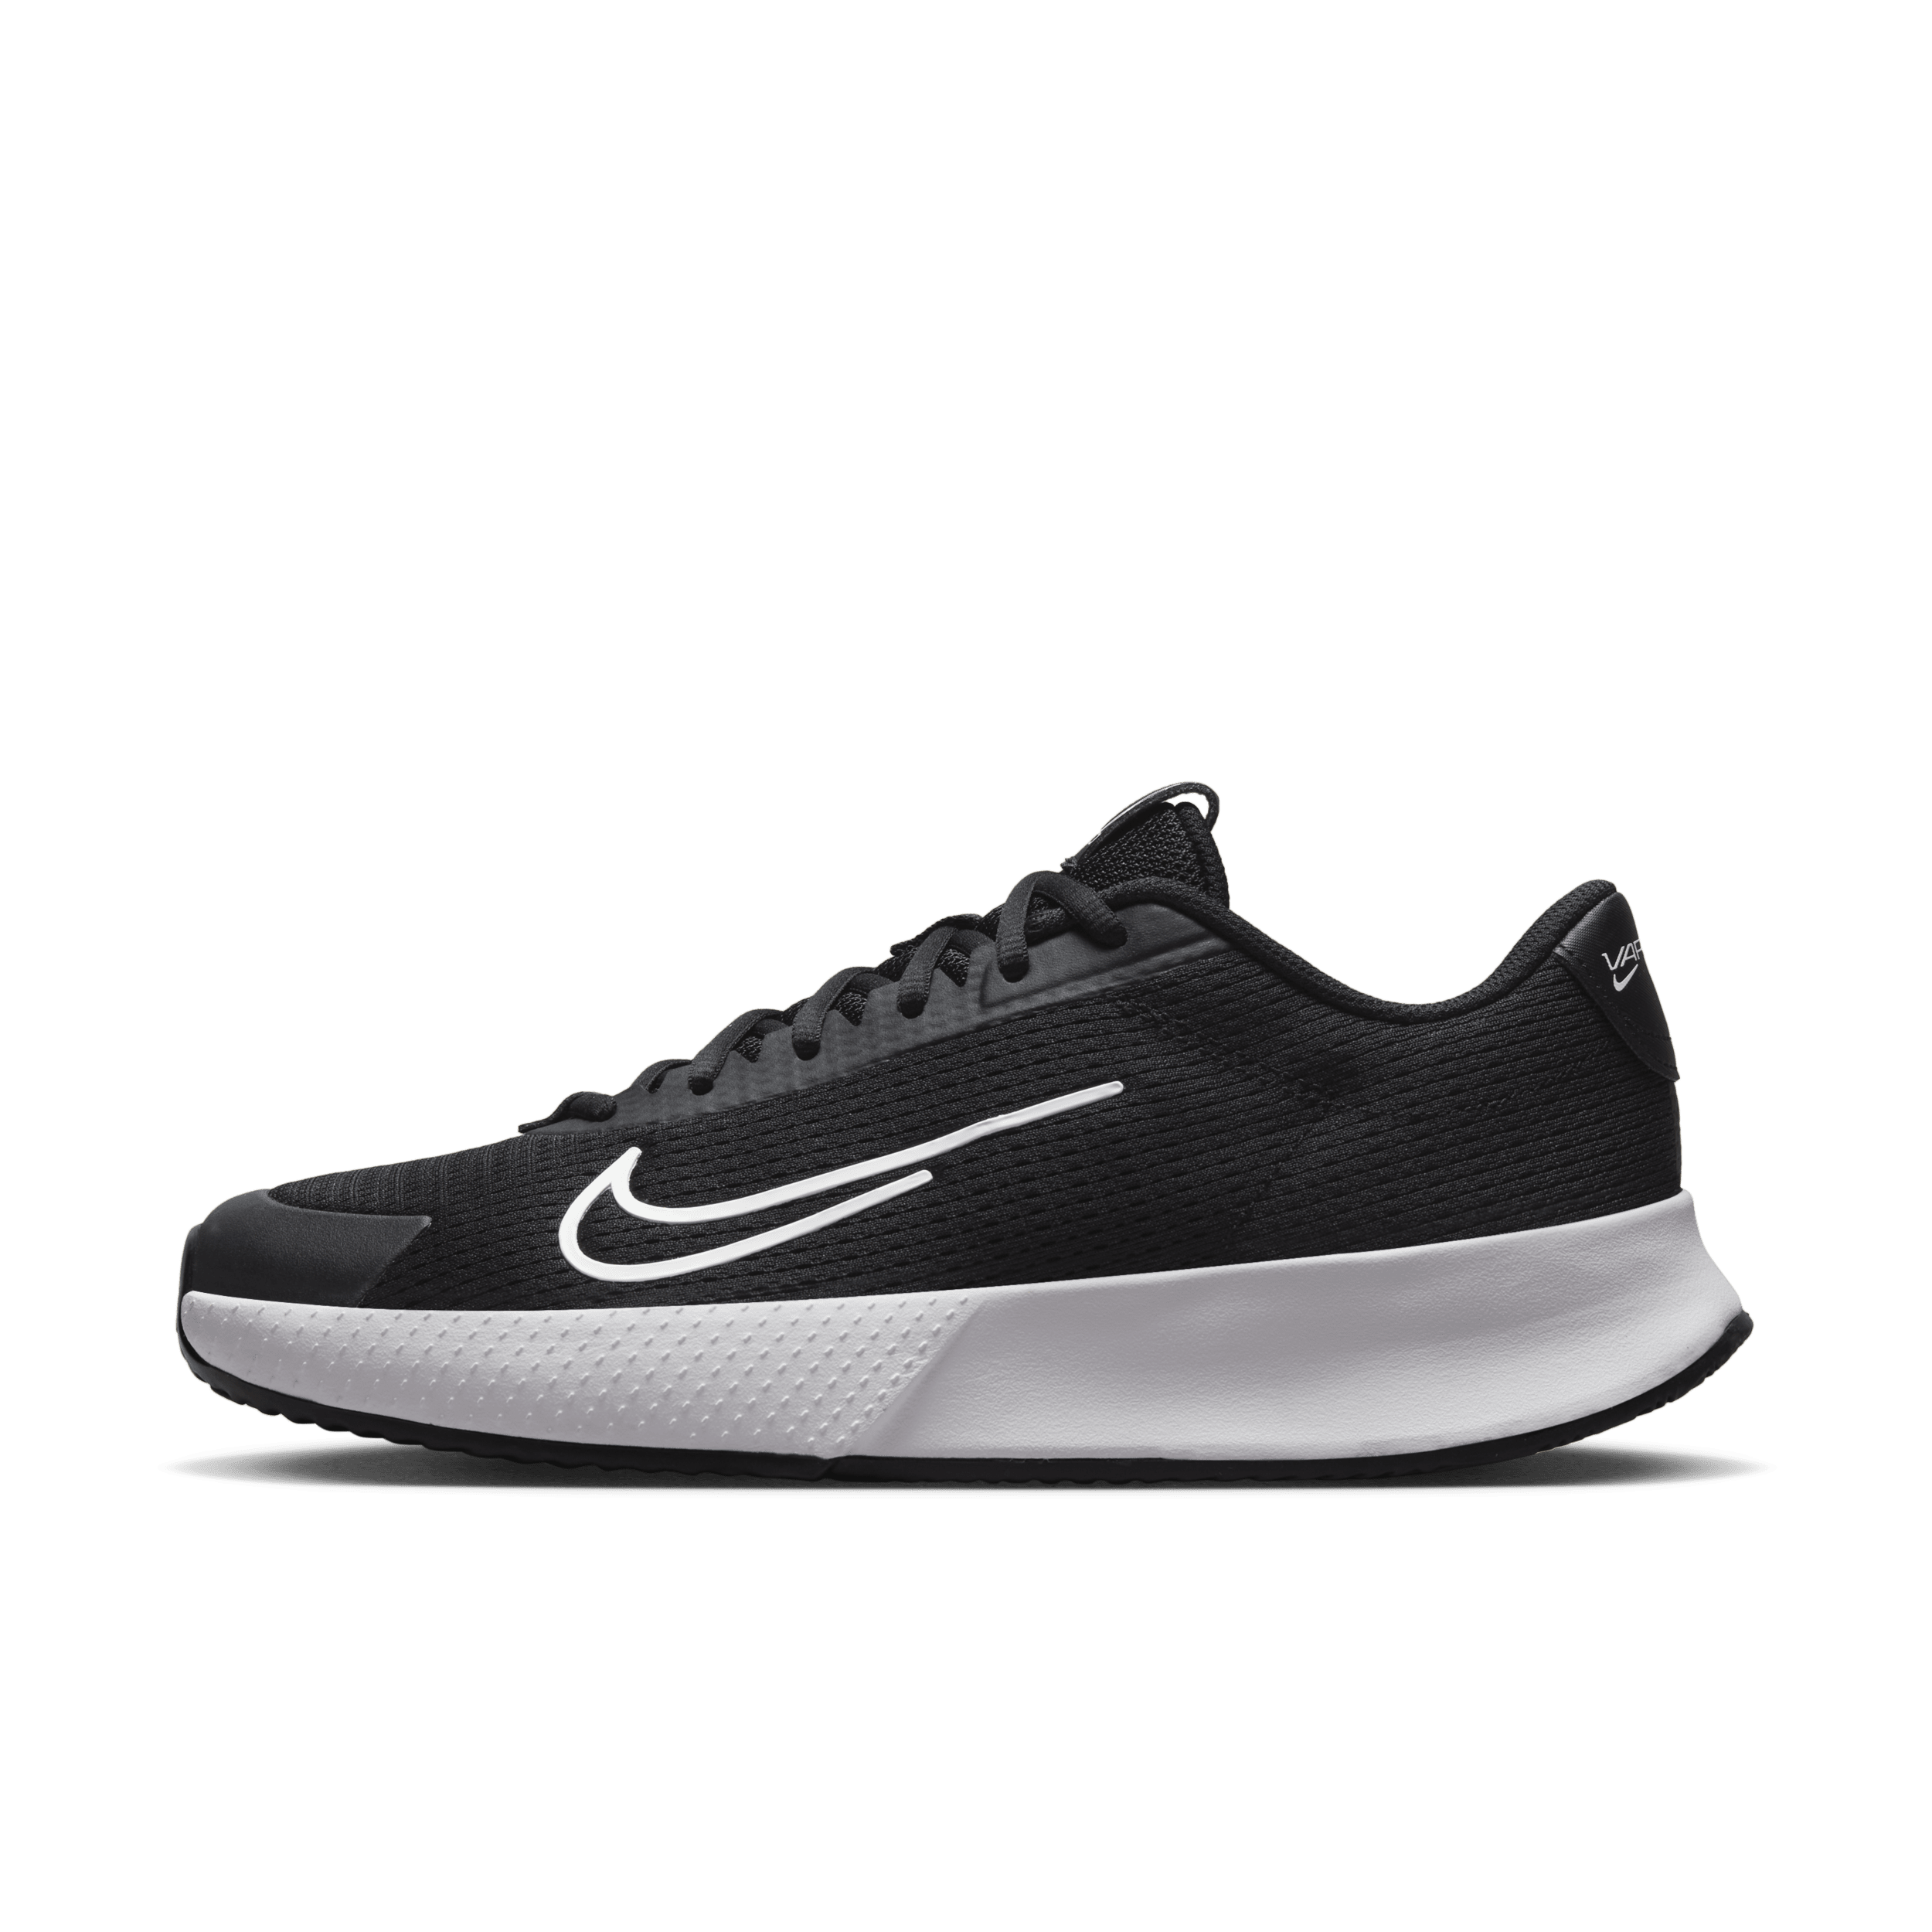 NikeCourt Vapor Lite 2-tennissko til grus til mænd - sort